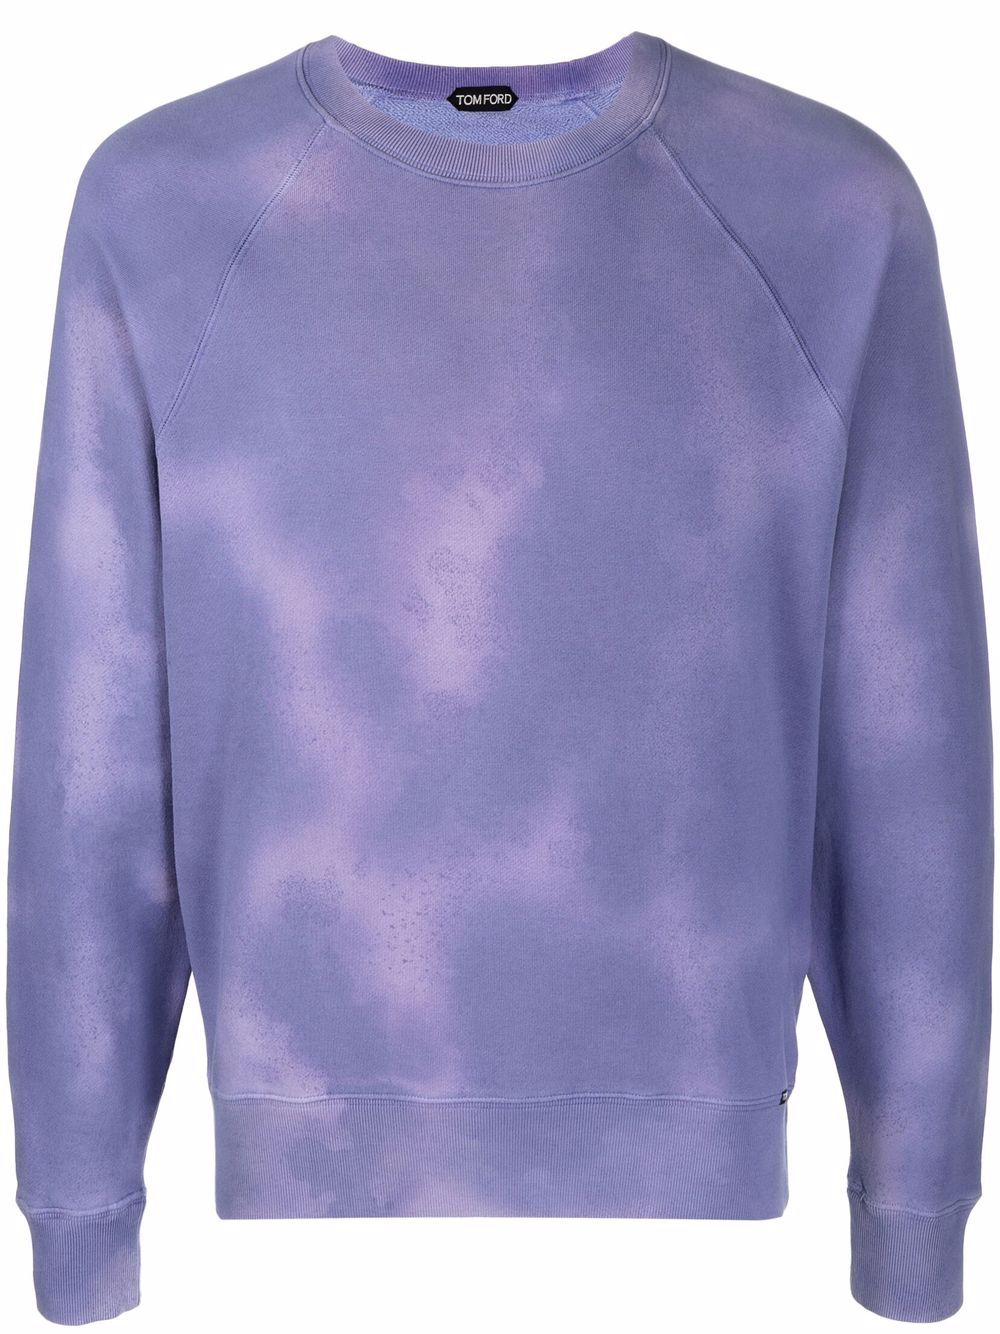 TOM FORD Tie Dye Sweatshirt Purple - MAISONDEFASHION.COM